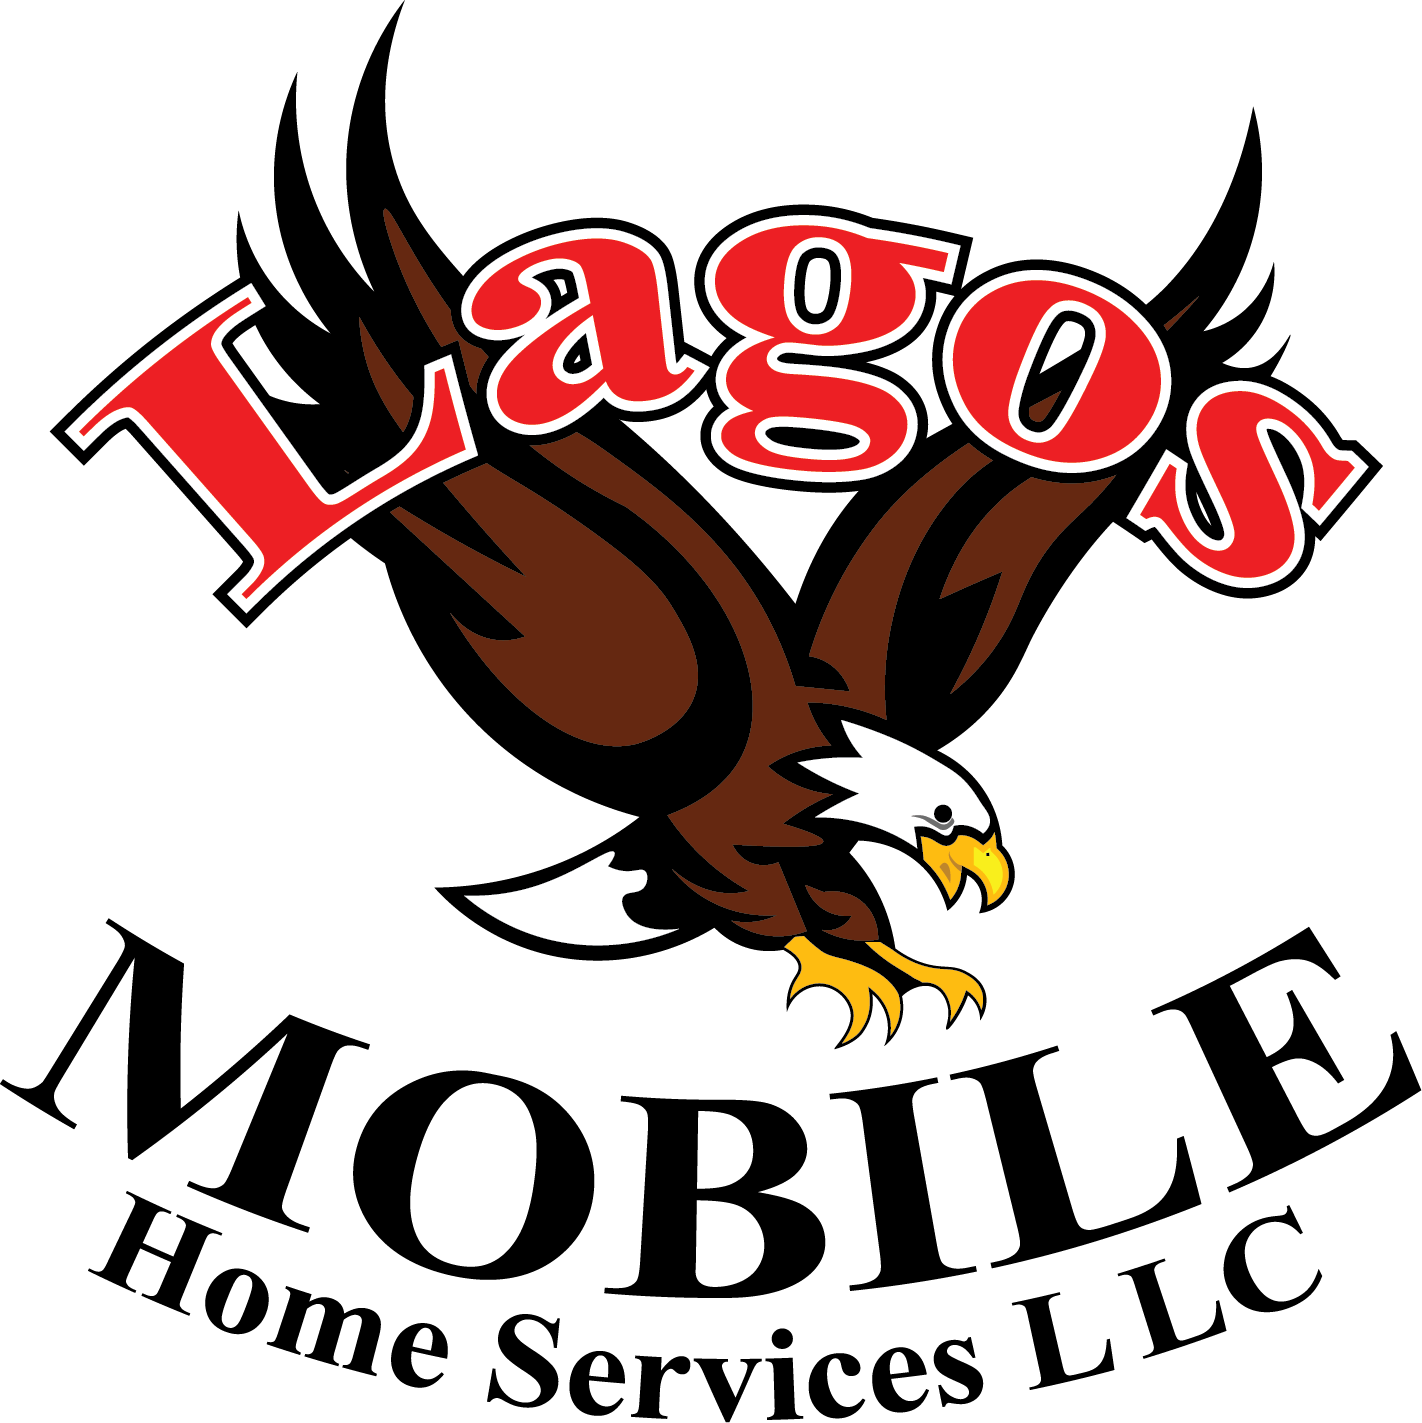 Lagos Mobile Home Services Logo